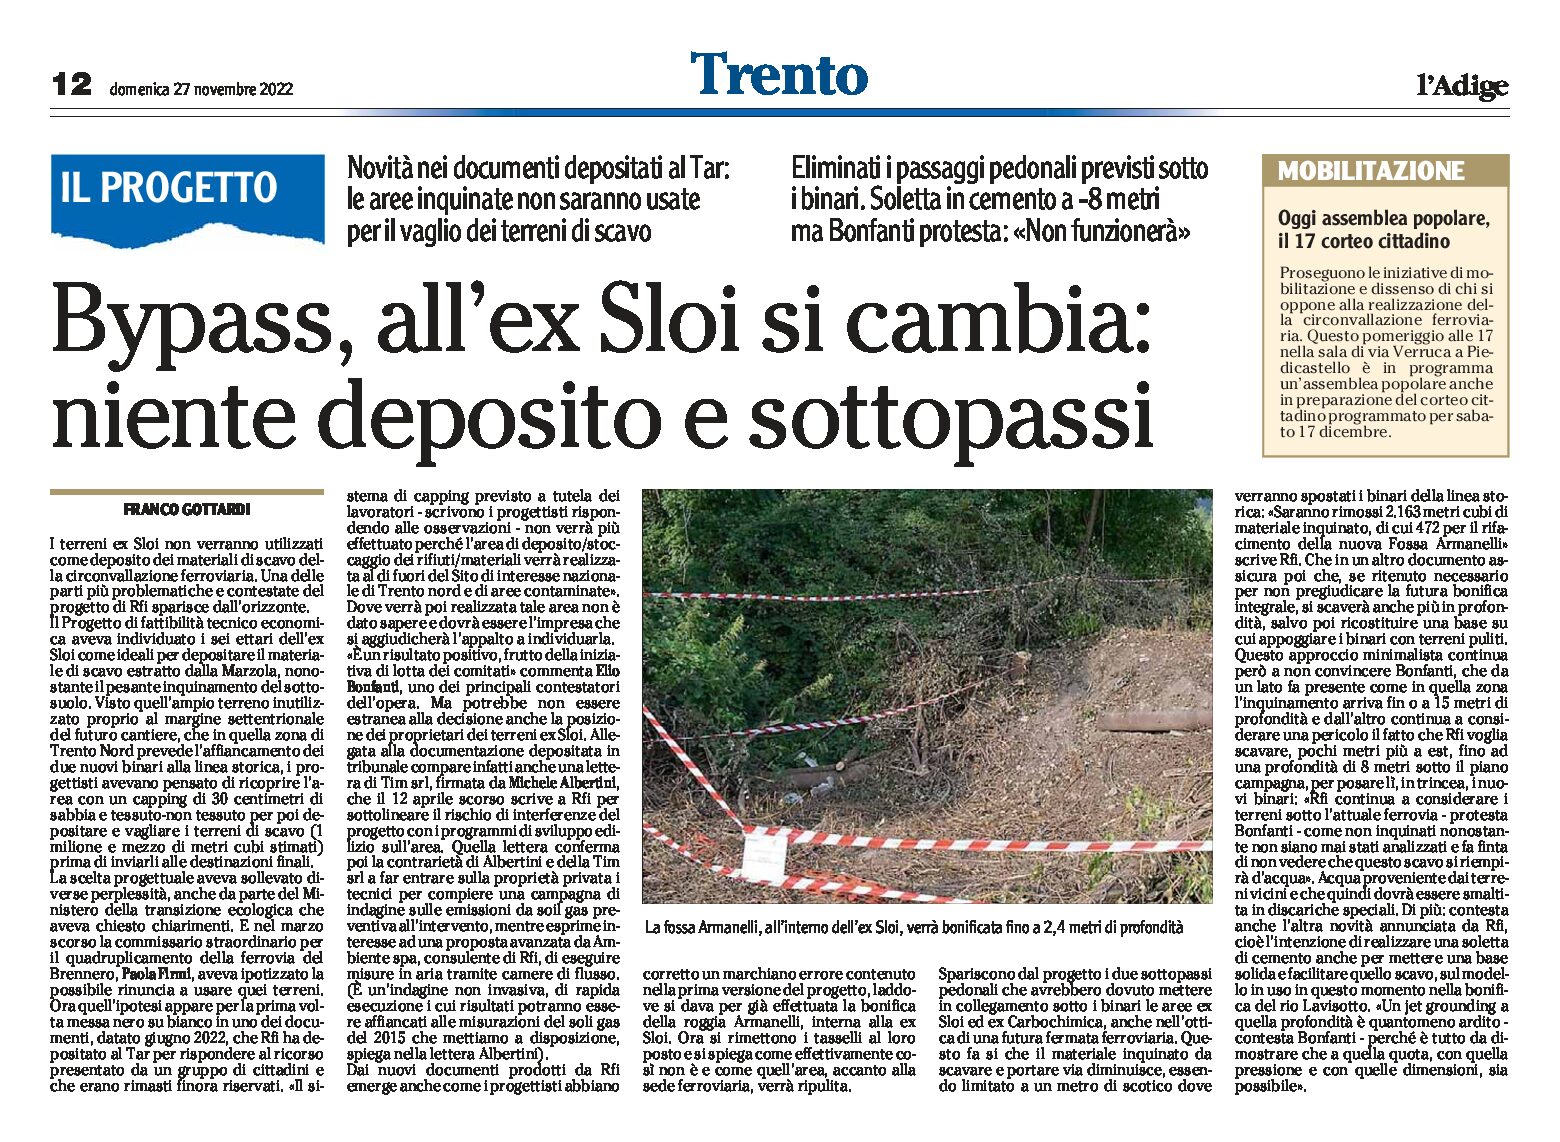 Trento, bypass ferroviario: alla ex Sloi si cambia. Niente deposito e sottopassi